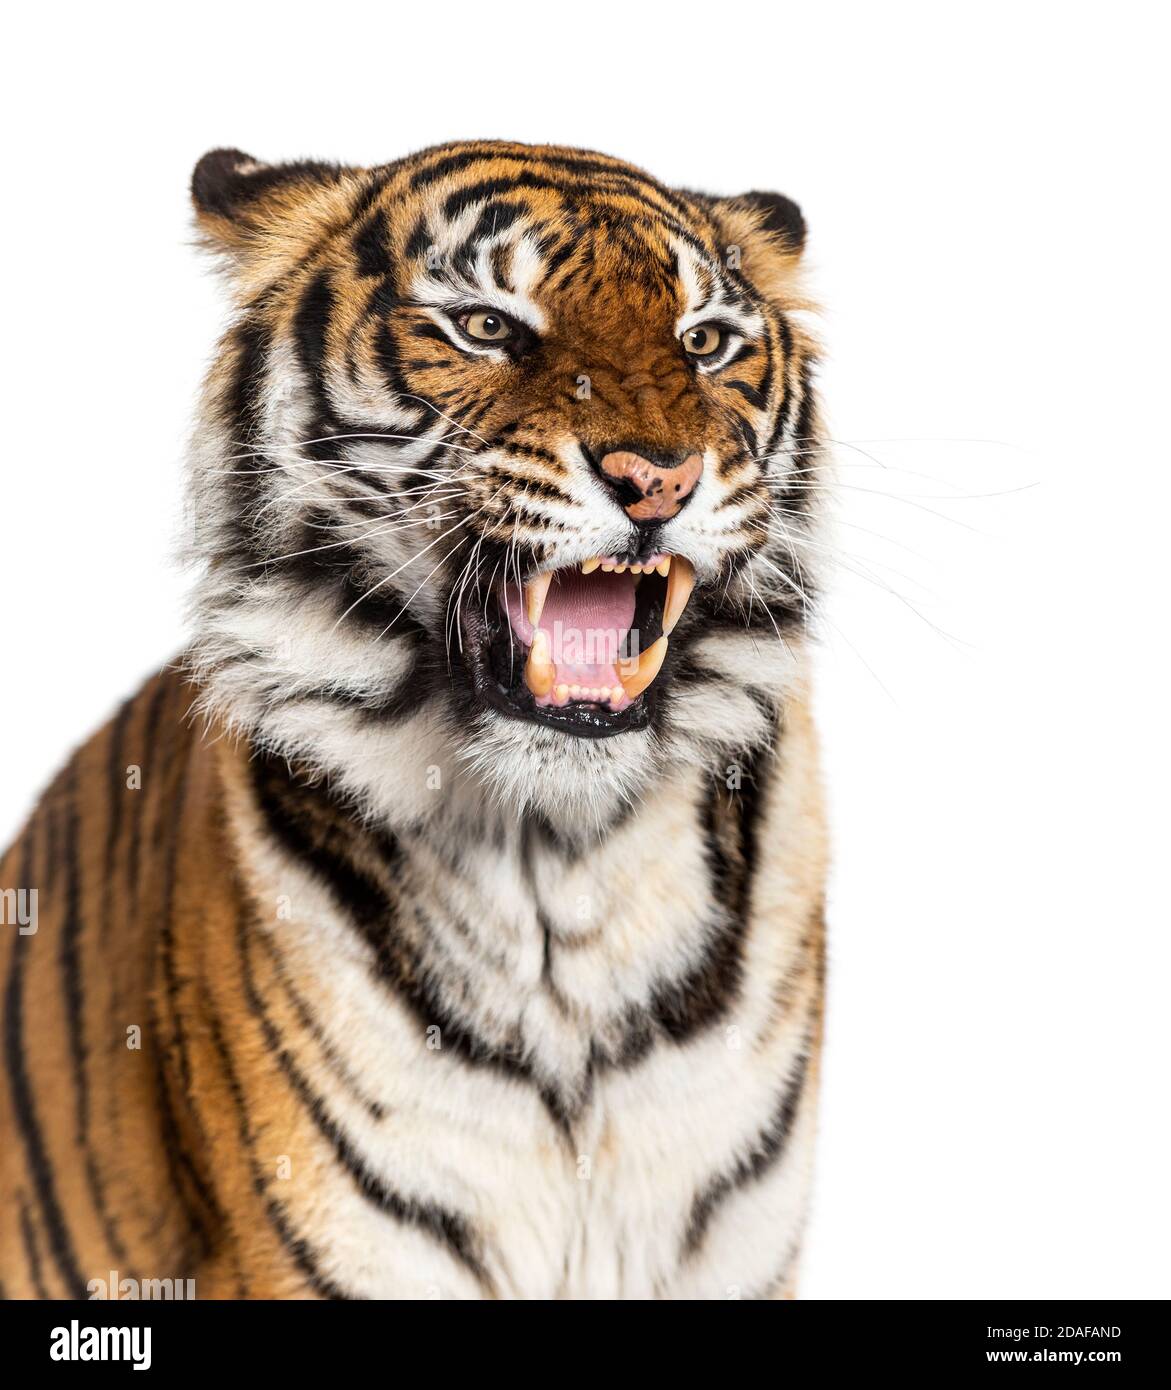 Nahaufnahme des Kopfes eines Tigers, der wütend aussieht und seinen Zahn zeigt Stockfoto